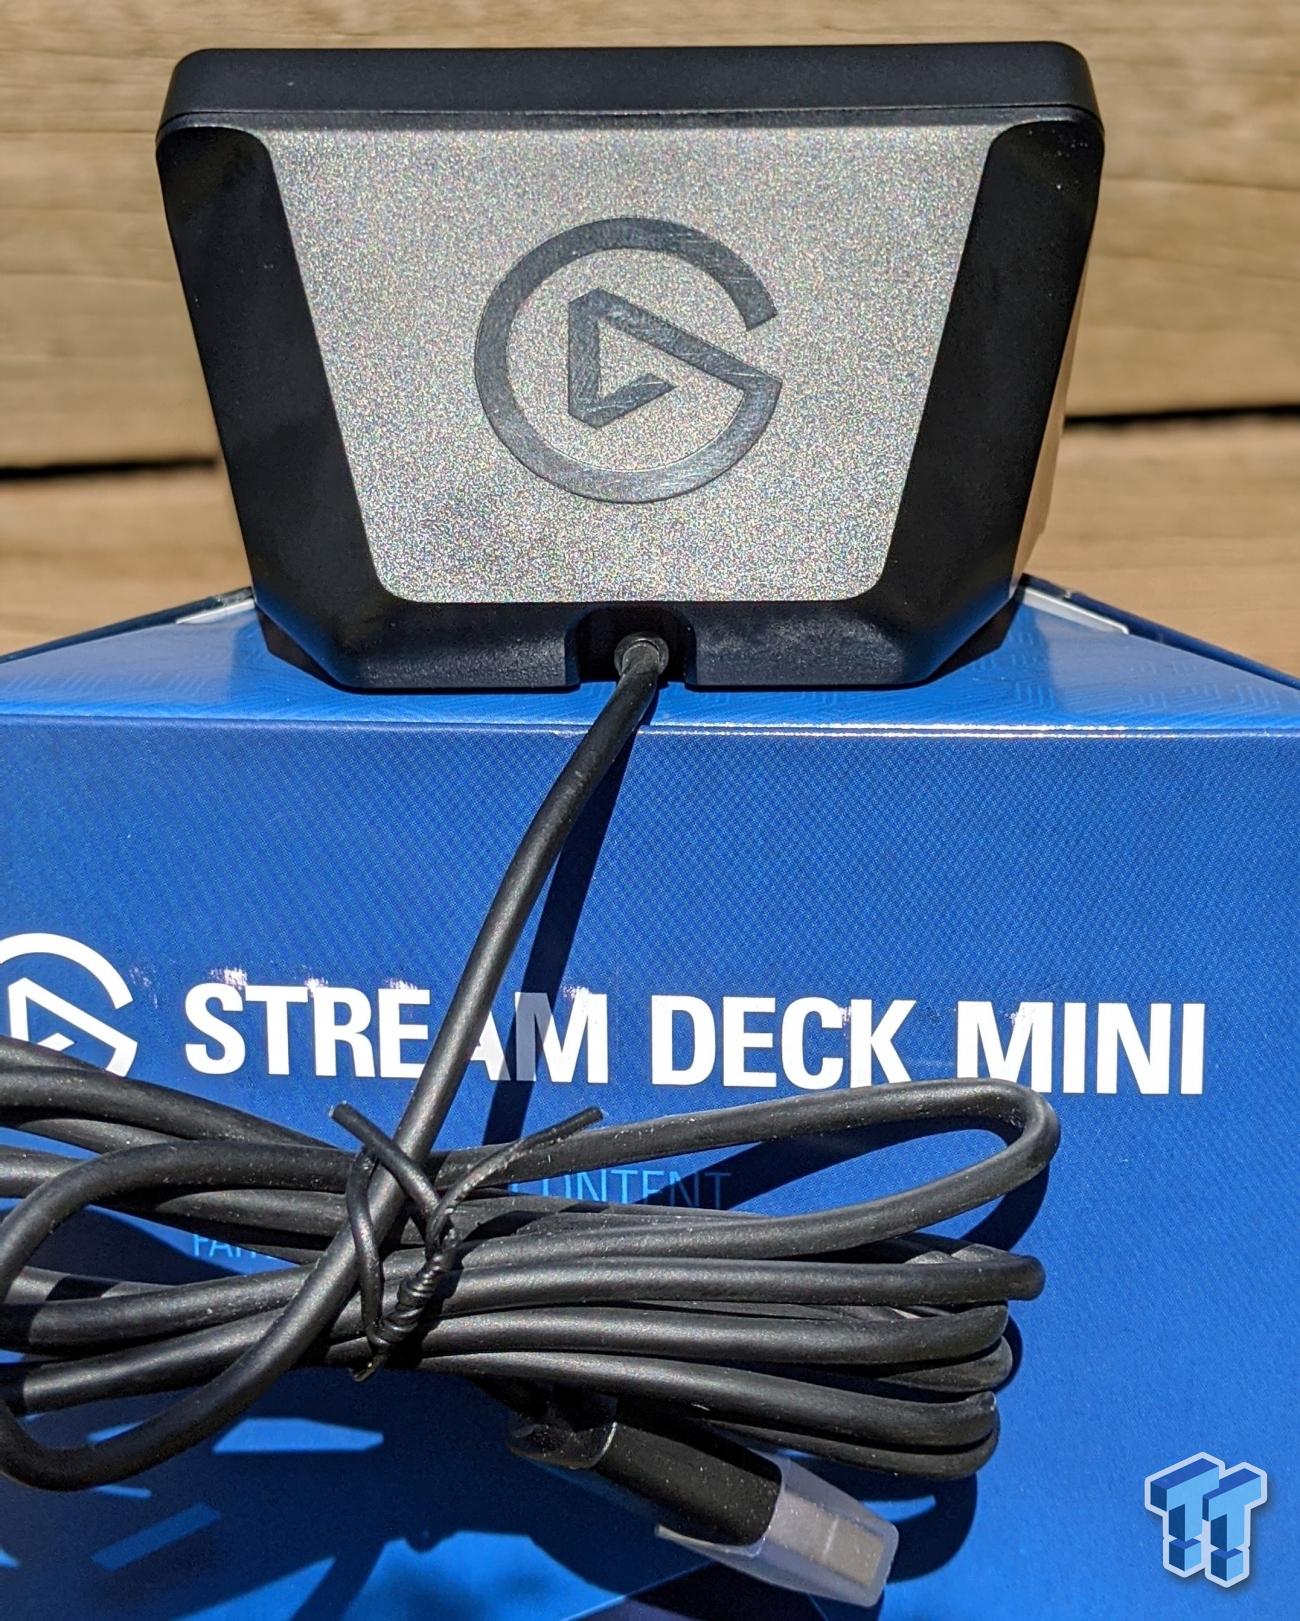 Elgato Stream Deck Mini Review: The Pocket-Sized Stream Companion